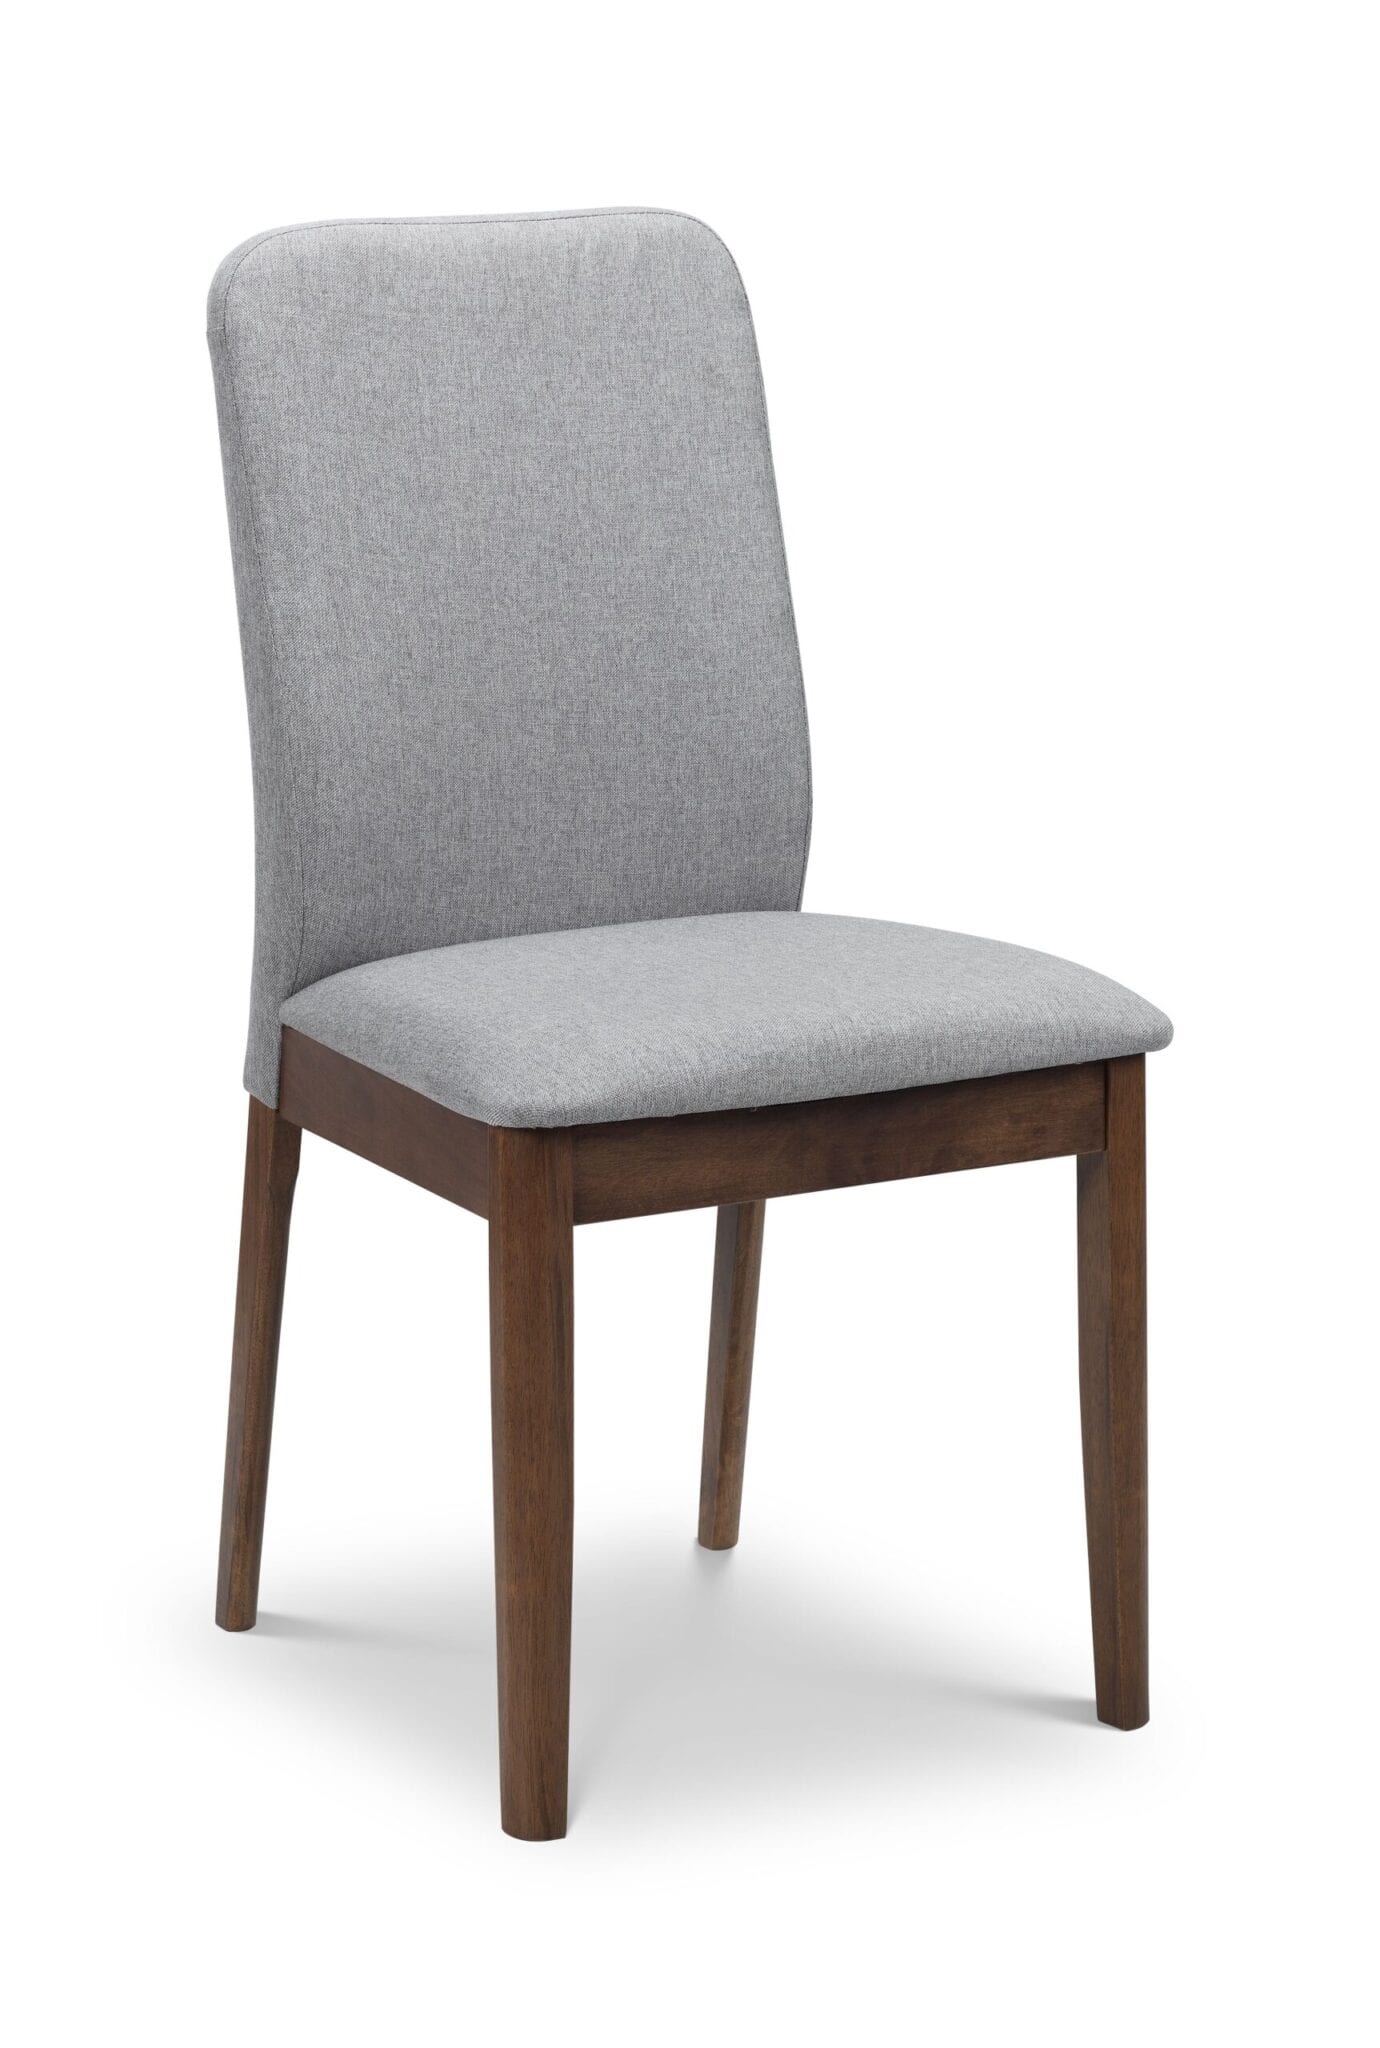 Dame Chair - Grey/Walnut